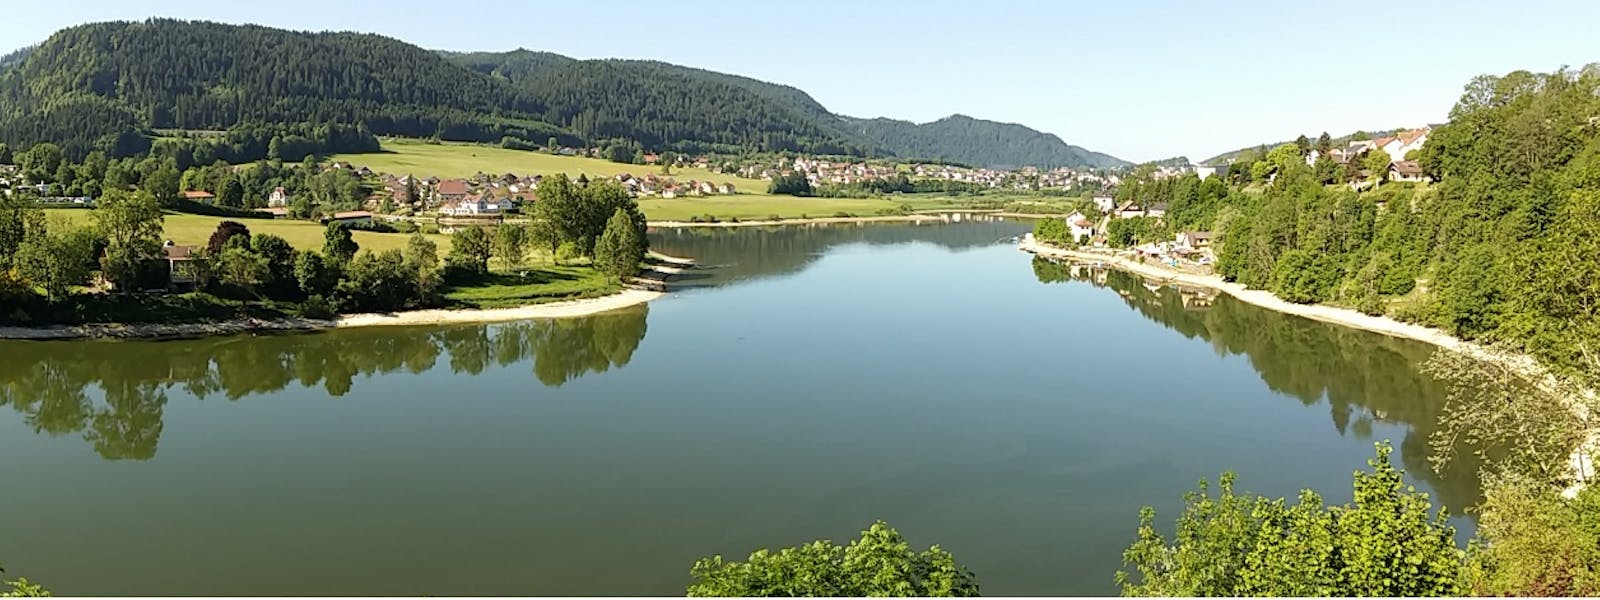 La rivière du Doubs et paysage.